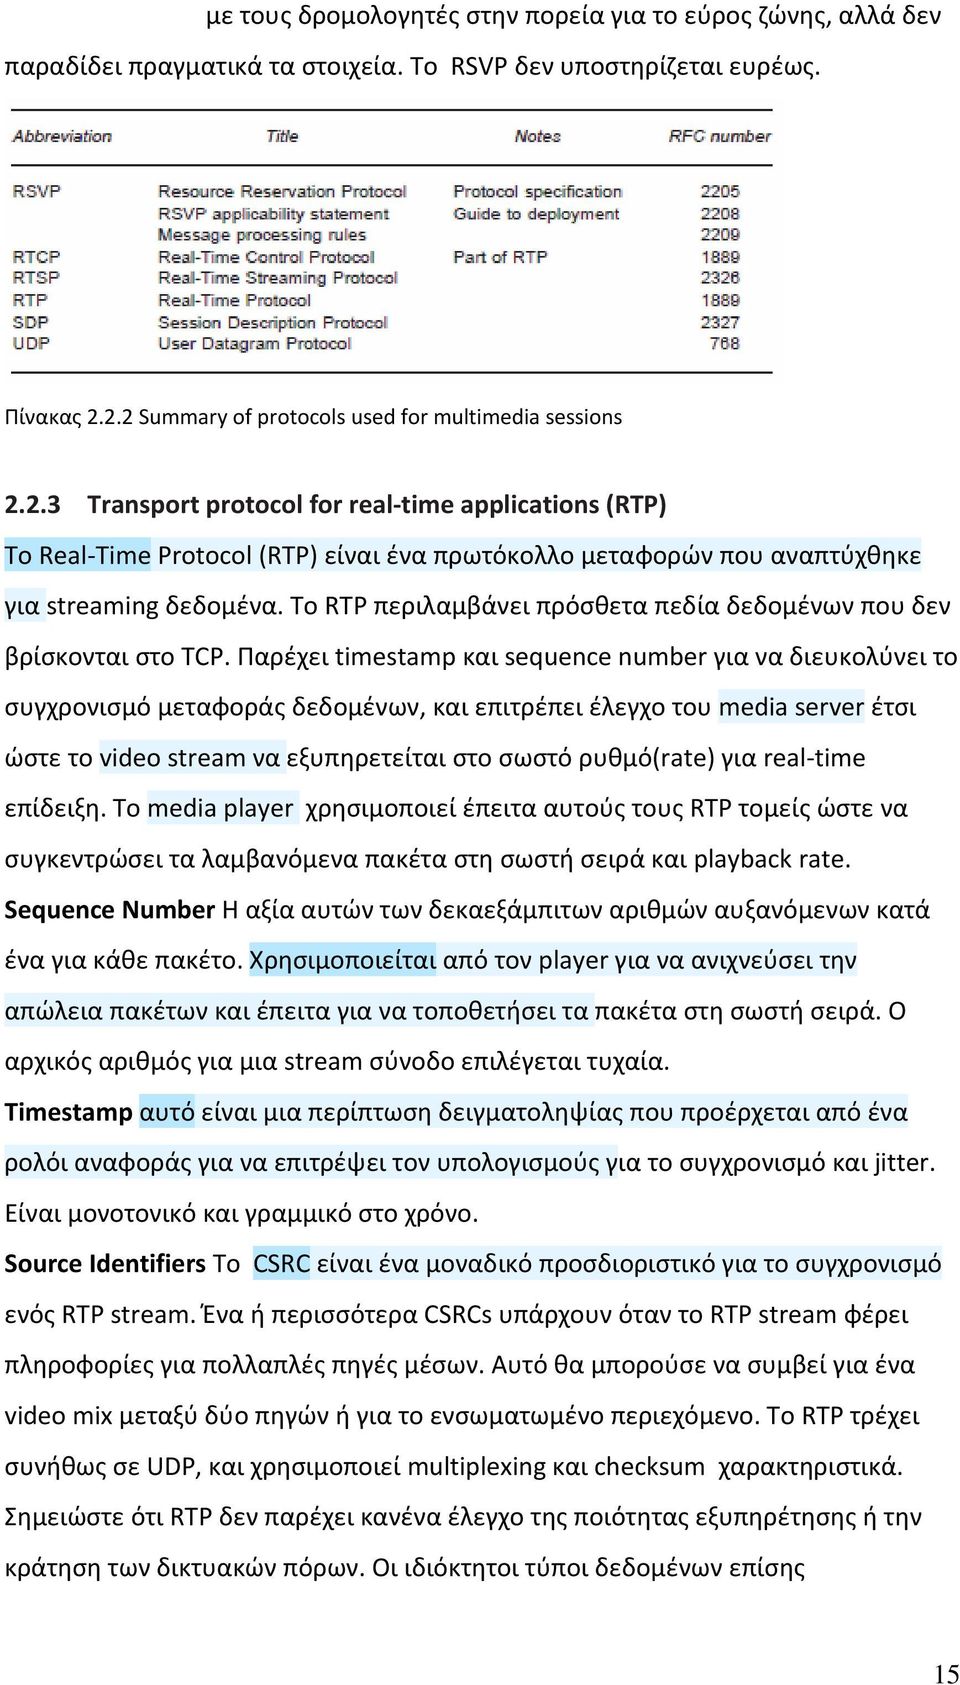 Το RTP περιλαμβάνει πρόσθετα πεδία δεδομένων που δεν βρίσκονται στο TCP.